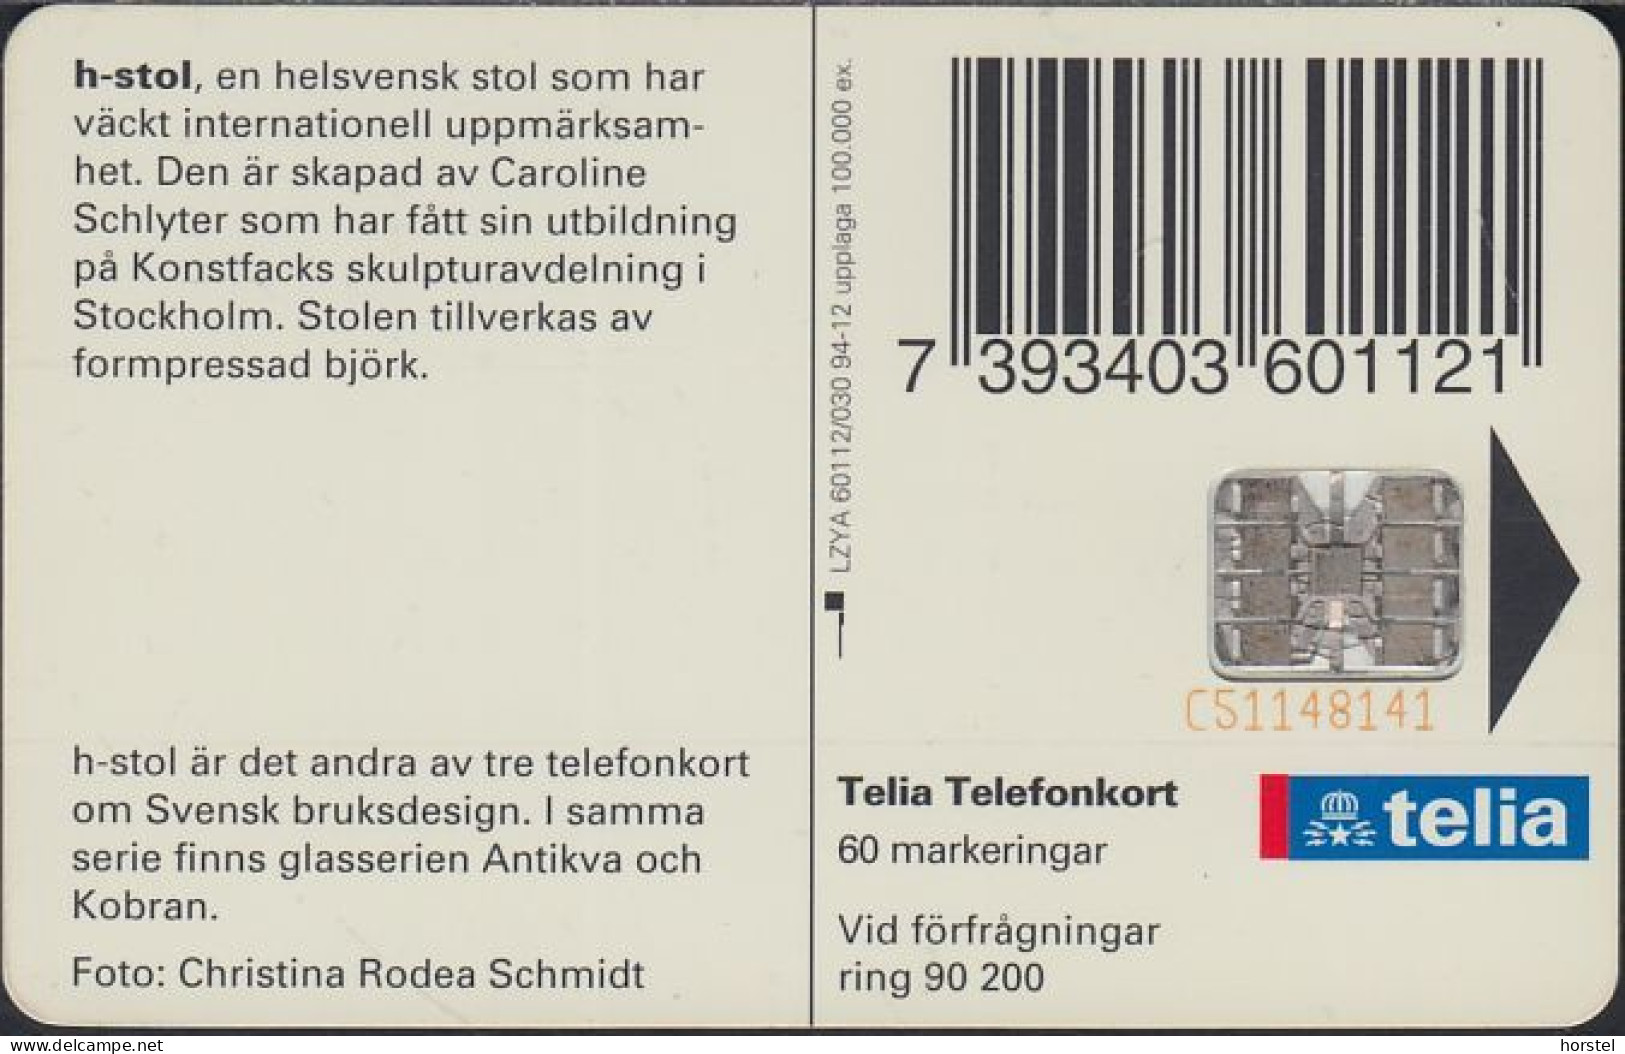 Schweden Chip 093  Design - H-shaped Chair - Stuhl  (60112/030) Red BN C51148141 - Svezia